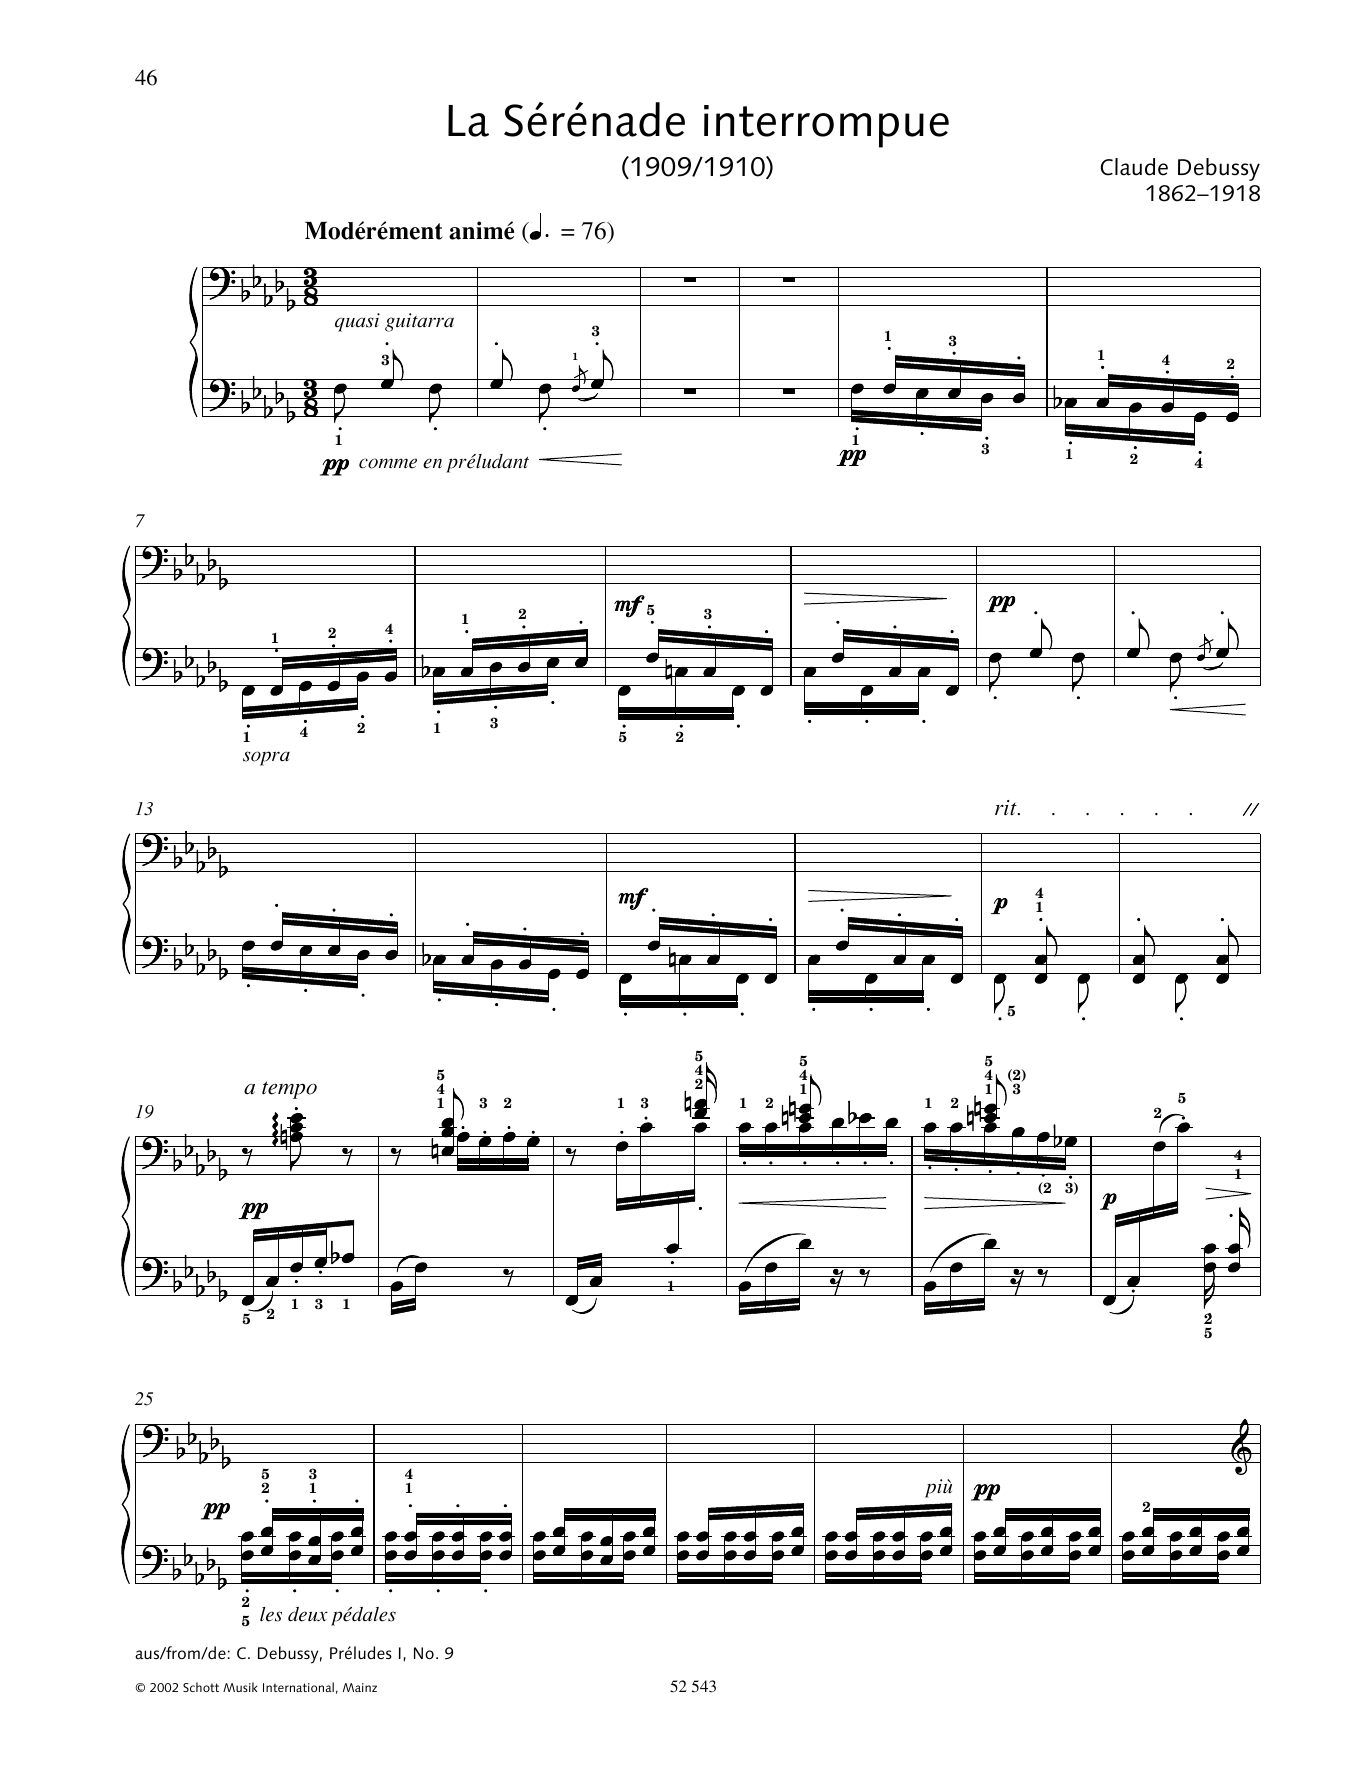 Download Claude Debussy La Serenade Interrompue Sheet Music